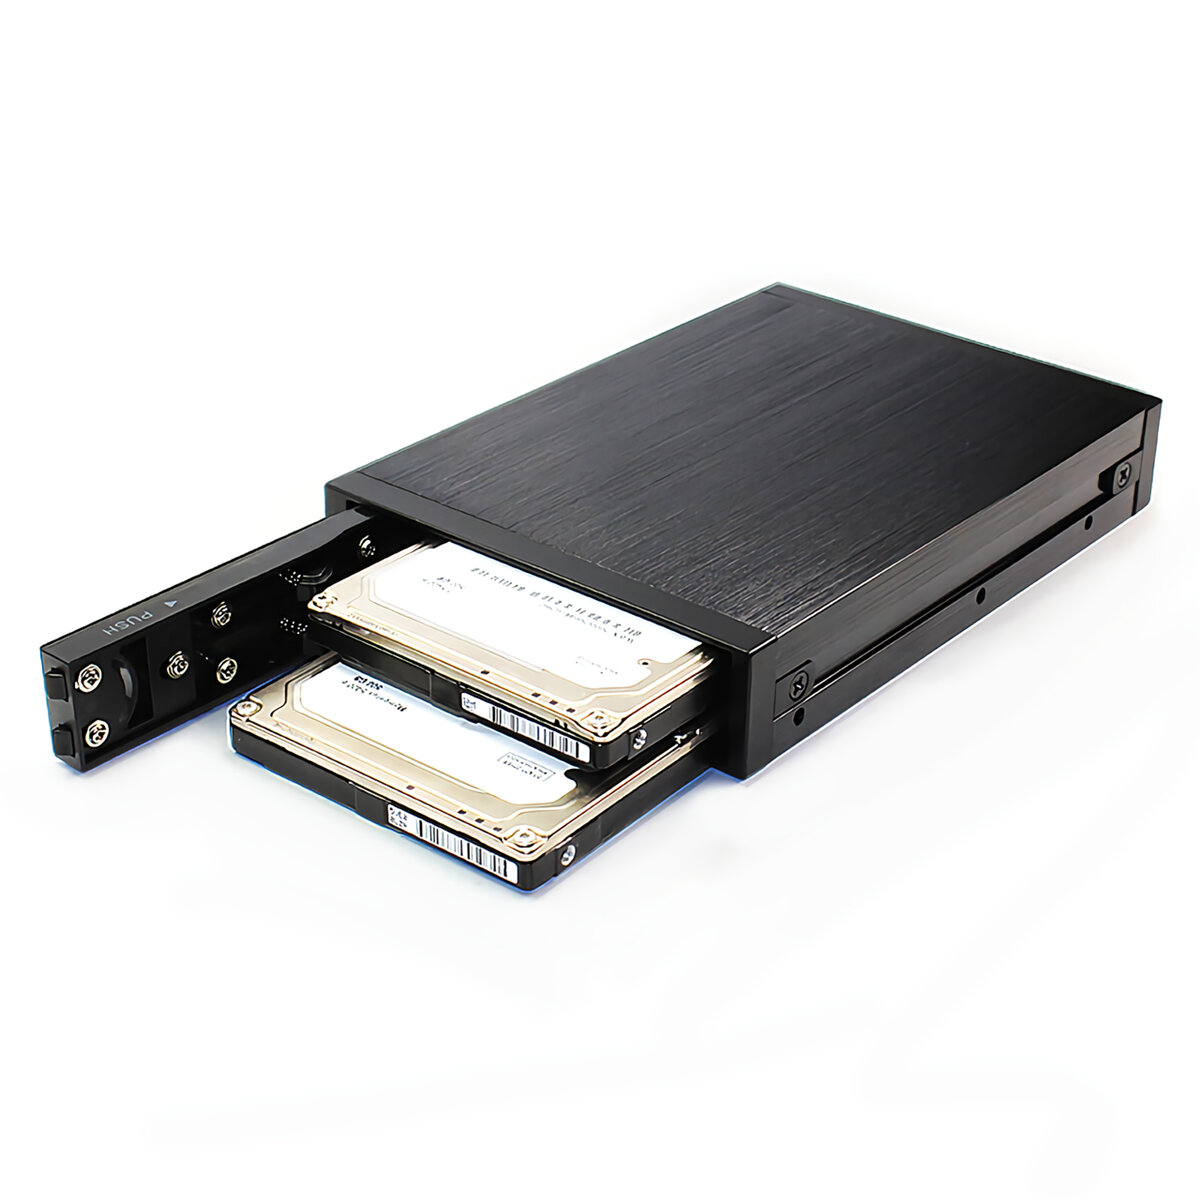 OImaster EB-6250 2.5 / 3.5インチデュアルベイHDD SSDケースボックスデュアルUSBオプティカルドライブモバイルラックステーションハードディスクエンクロージャーデスクトップPCコンピューター用